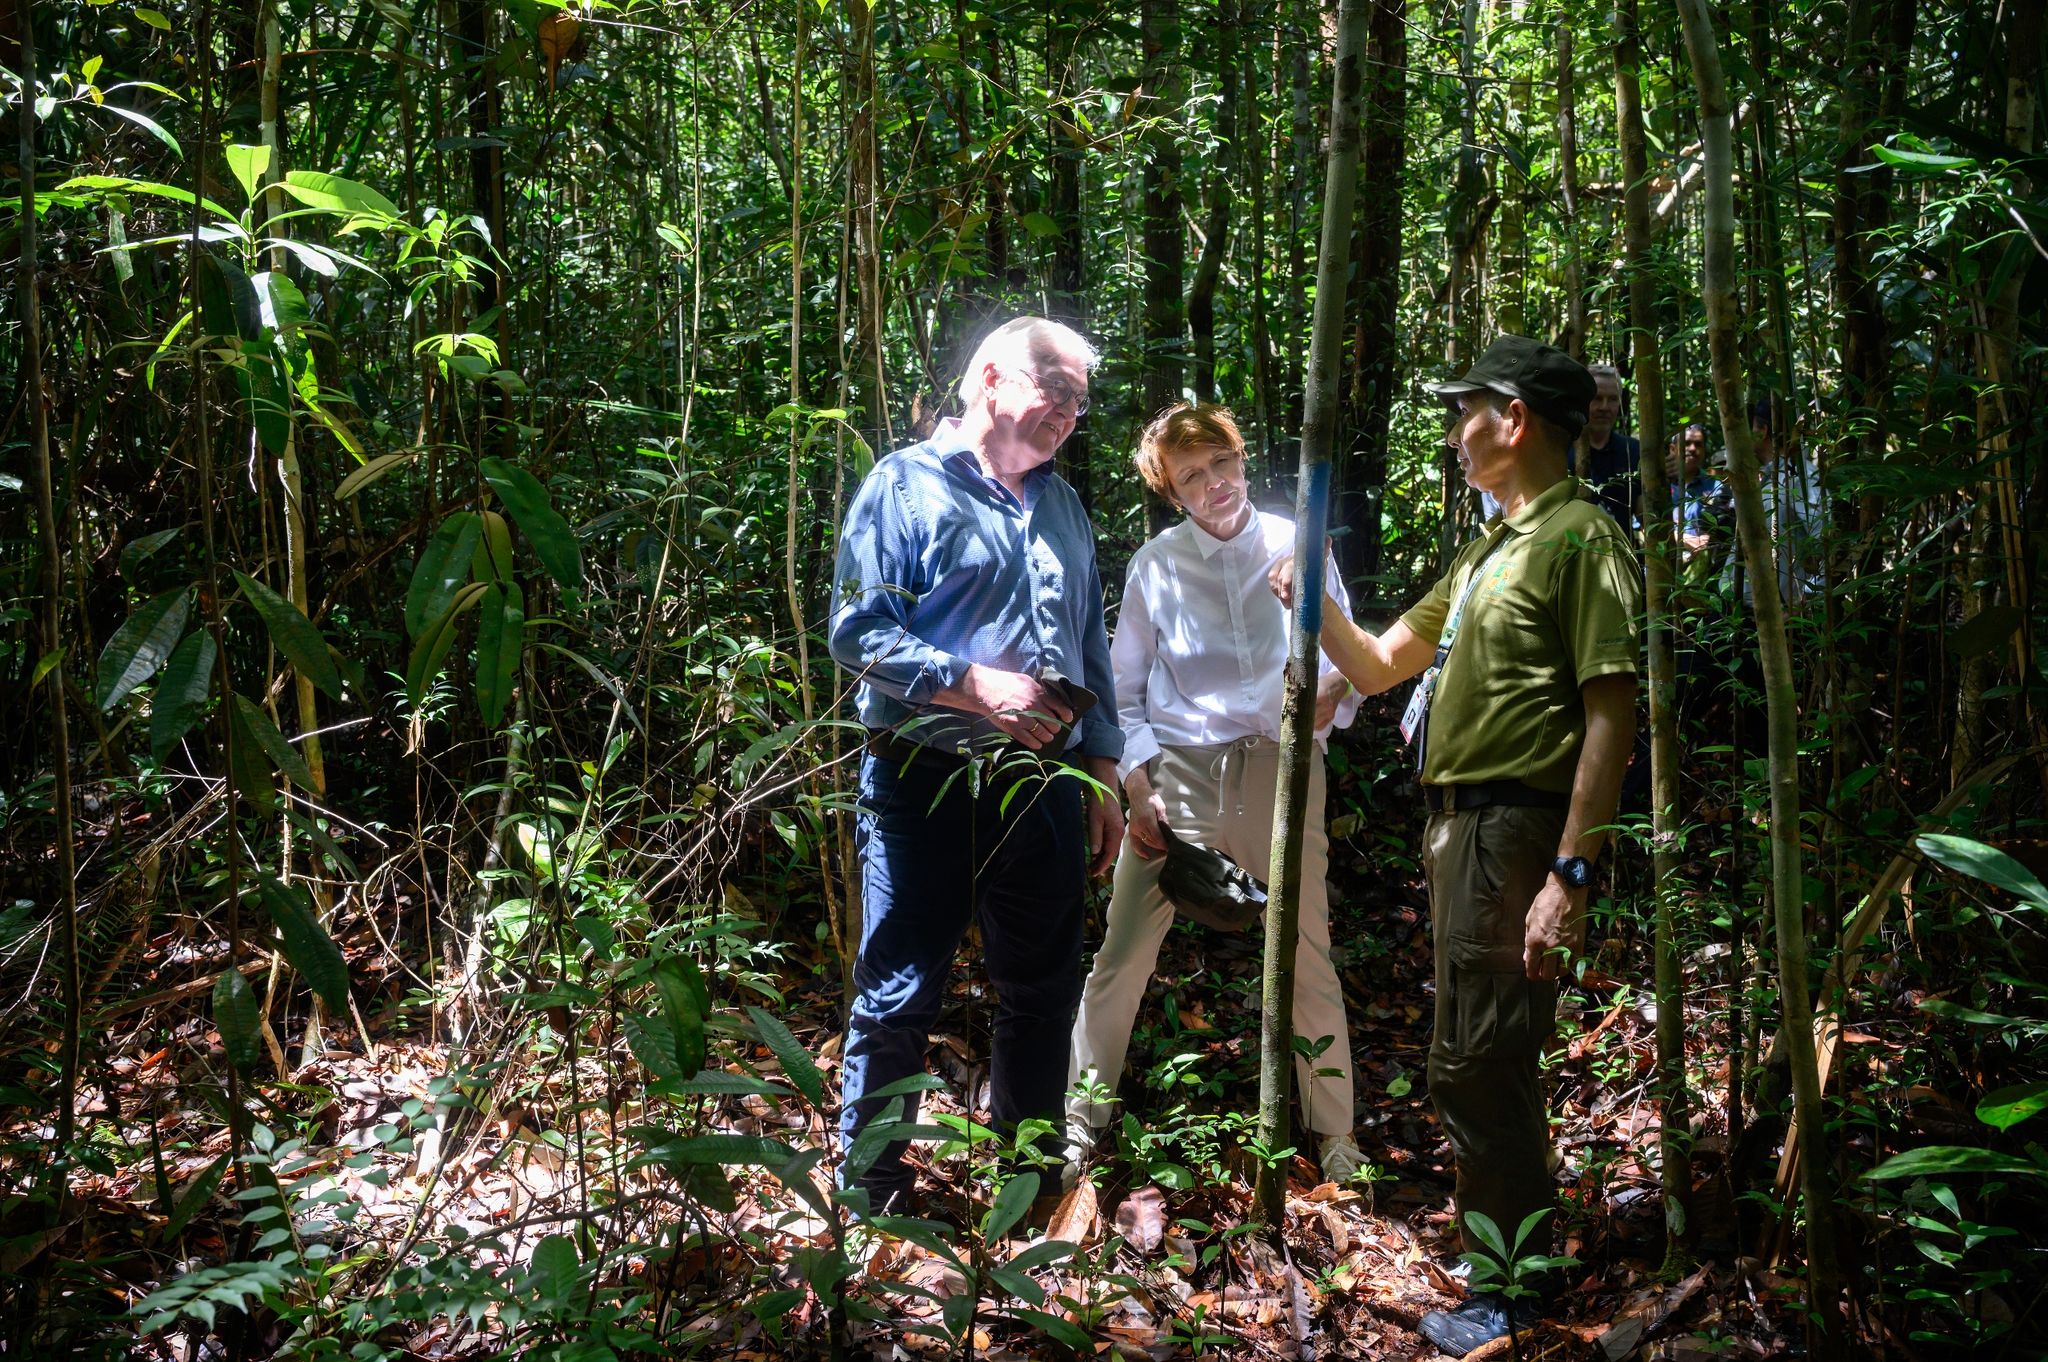 Bundespräsident Frank-Walter Steinmeier und seine Frau Elke Büdenbender werden im Kuching Wetland Nationalpark durch einen Urwald geführt.